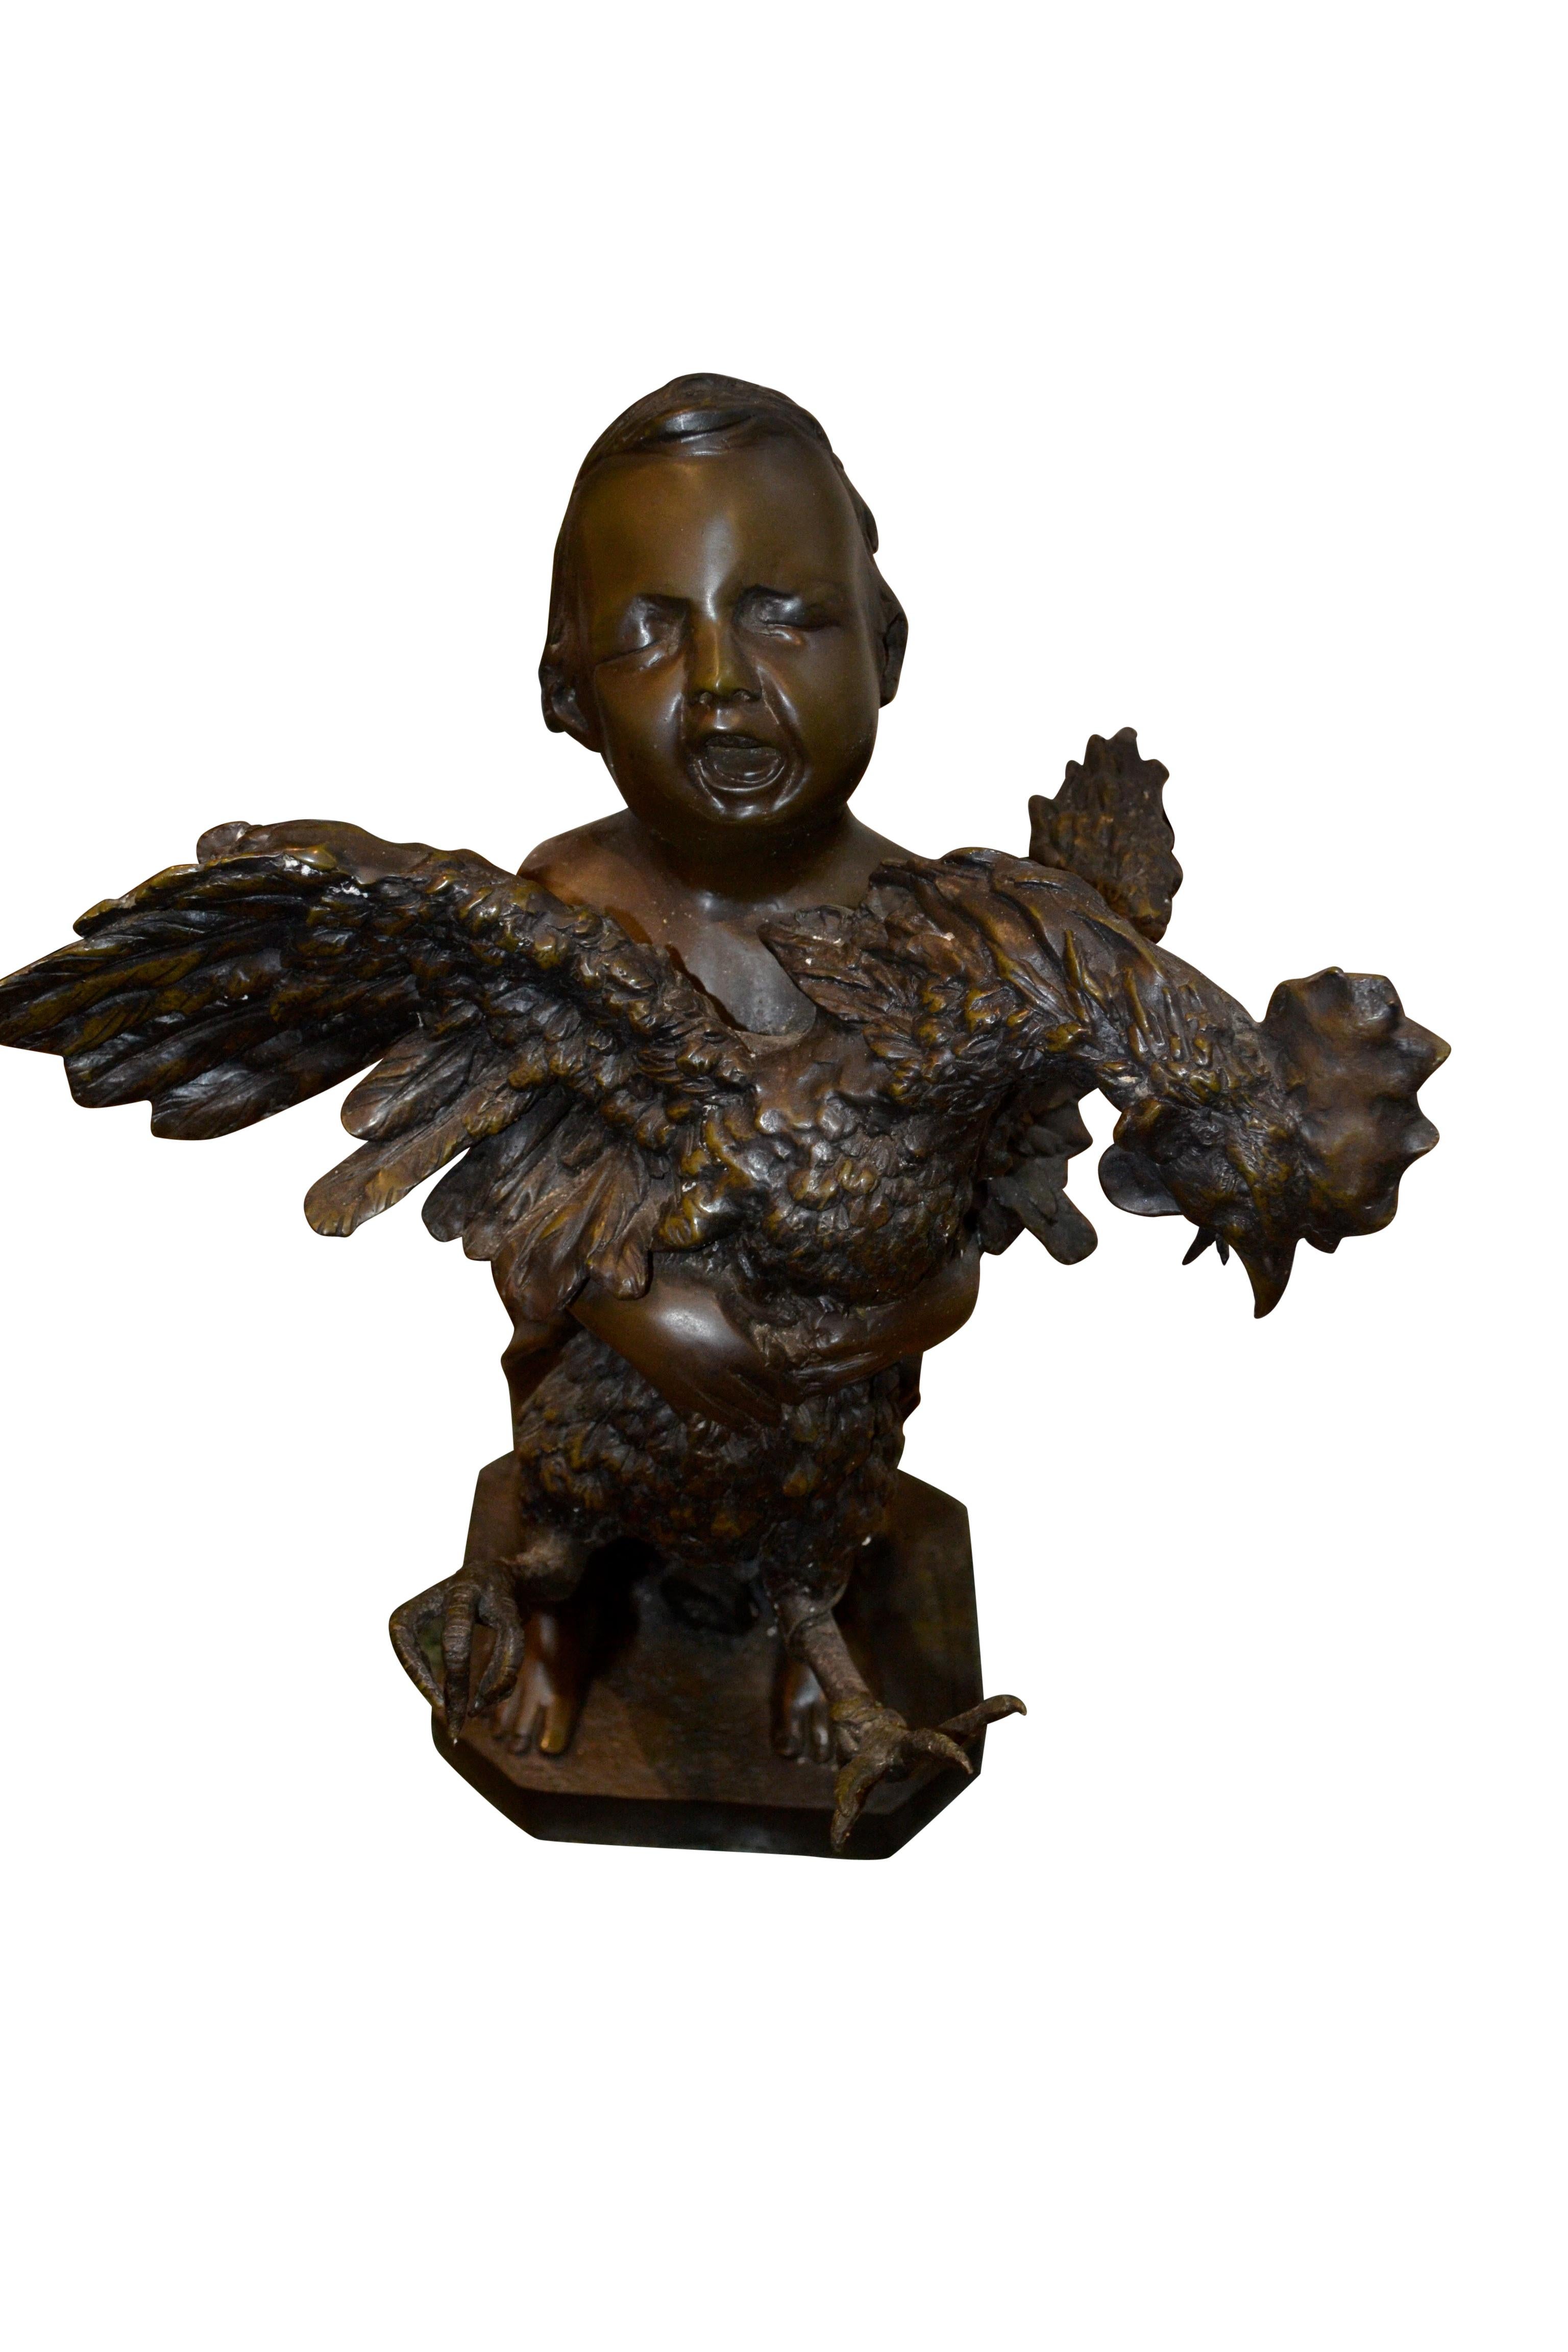 Statue en bronze d'un jeune garçon debout qui tient dans ses bras un coq attaché dont les ailes battent follement. Le garçon se trouve vraisemblablement dans un marché de producteurs et son expression montre qu'il crie à tue-tête pour essayer de